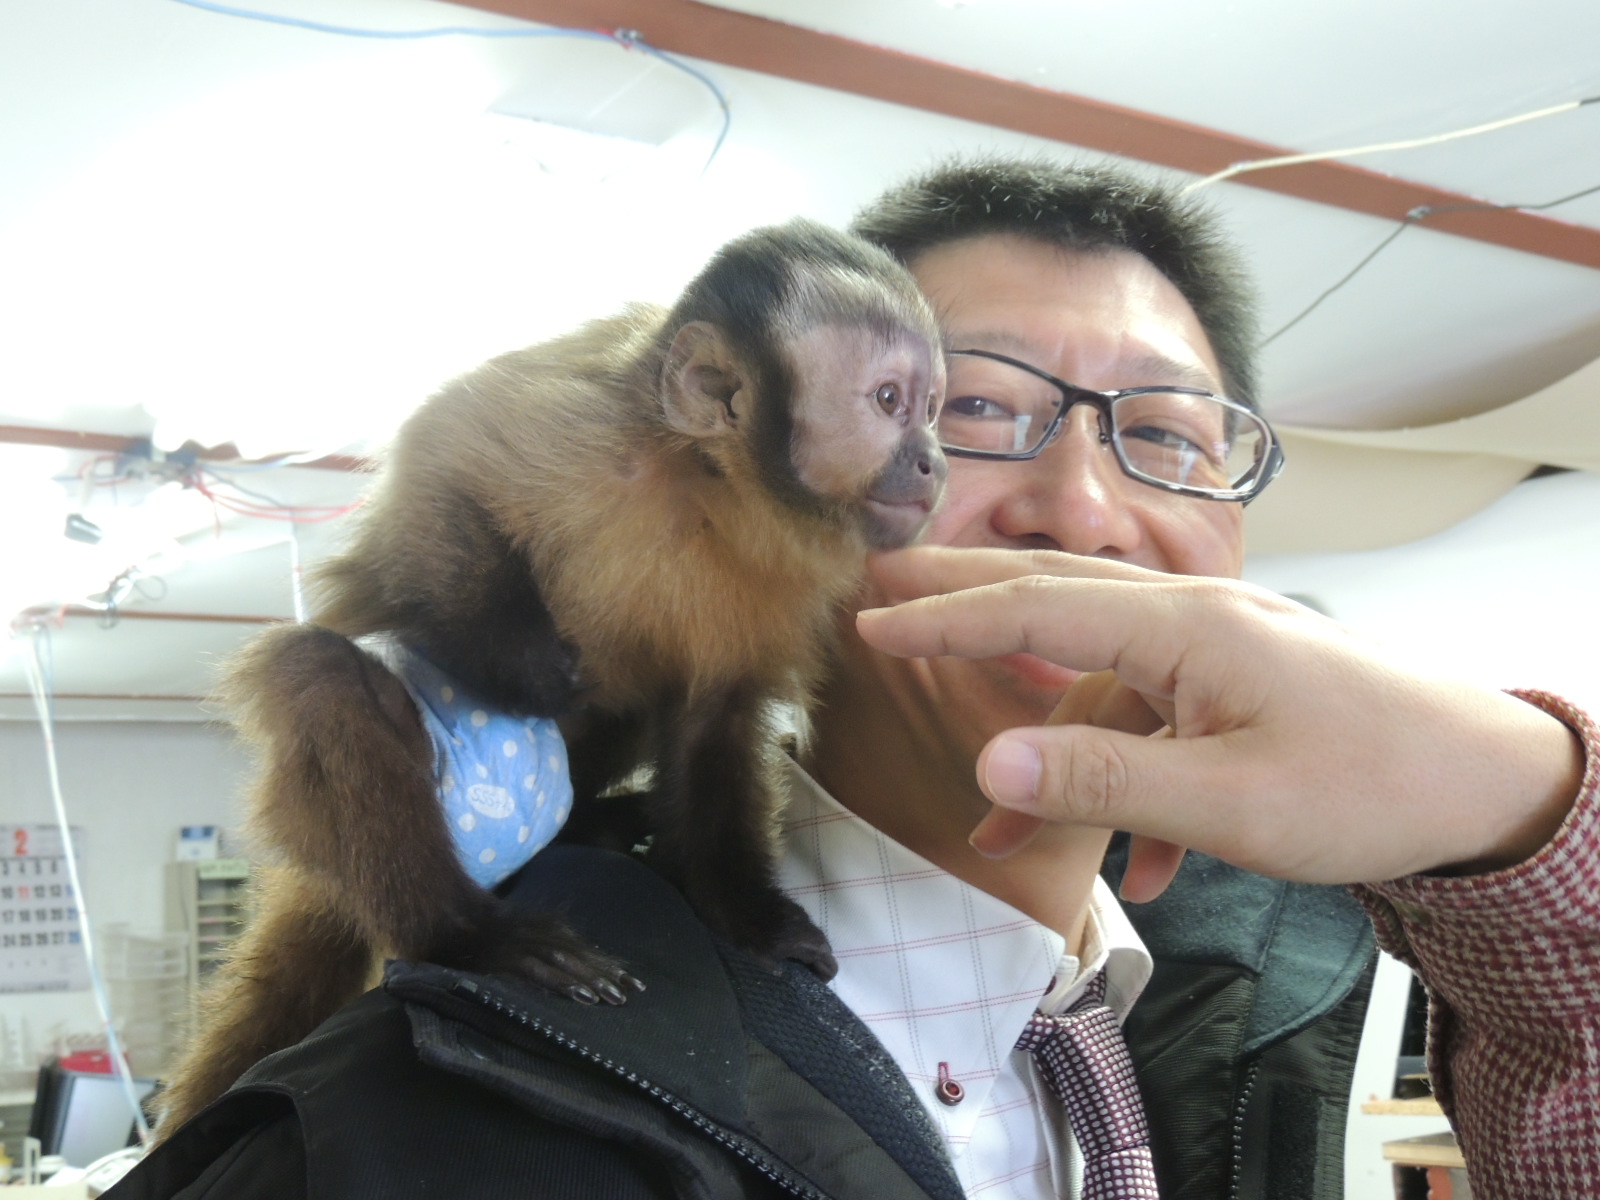 ちょ かわいいな O 寺坂農園にお猿さんが来た 北海道 富良野 感動野菜産直農家 寺坂農園ブログ